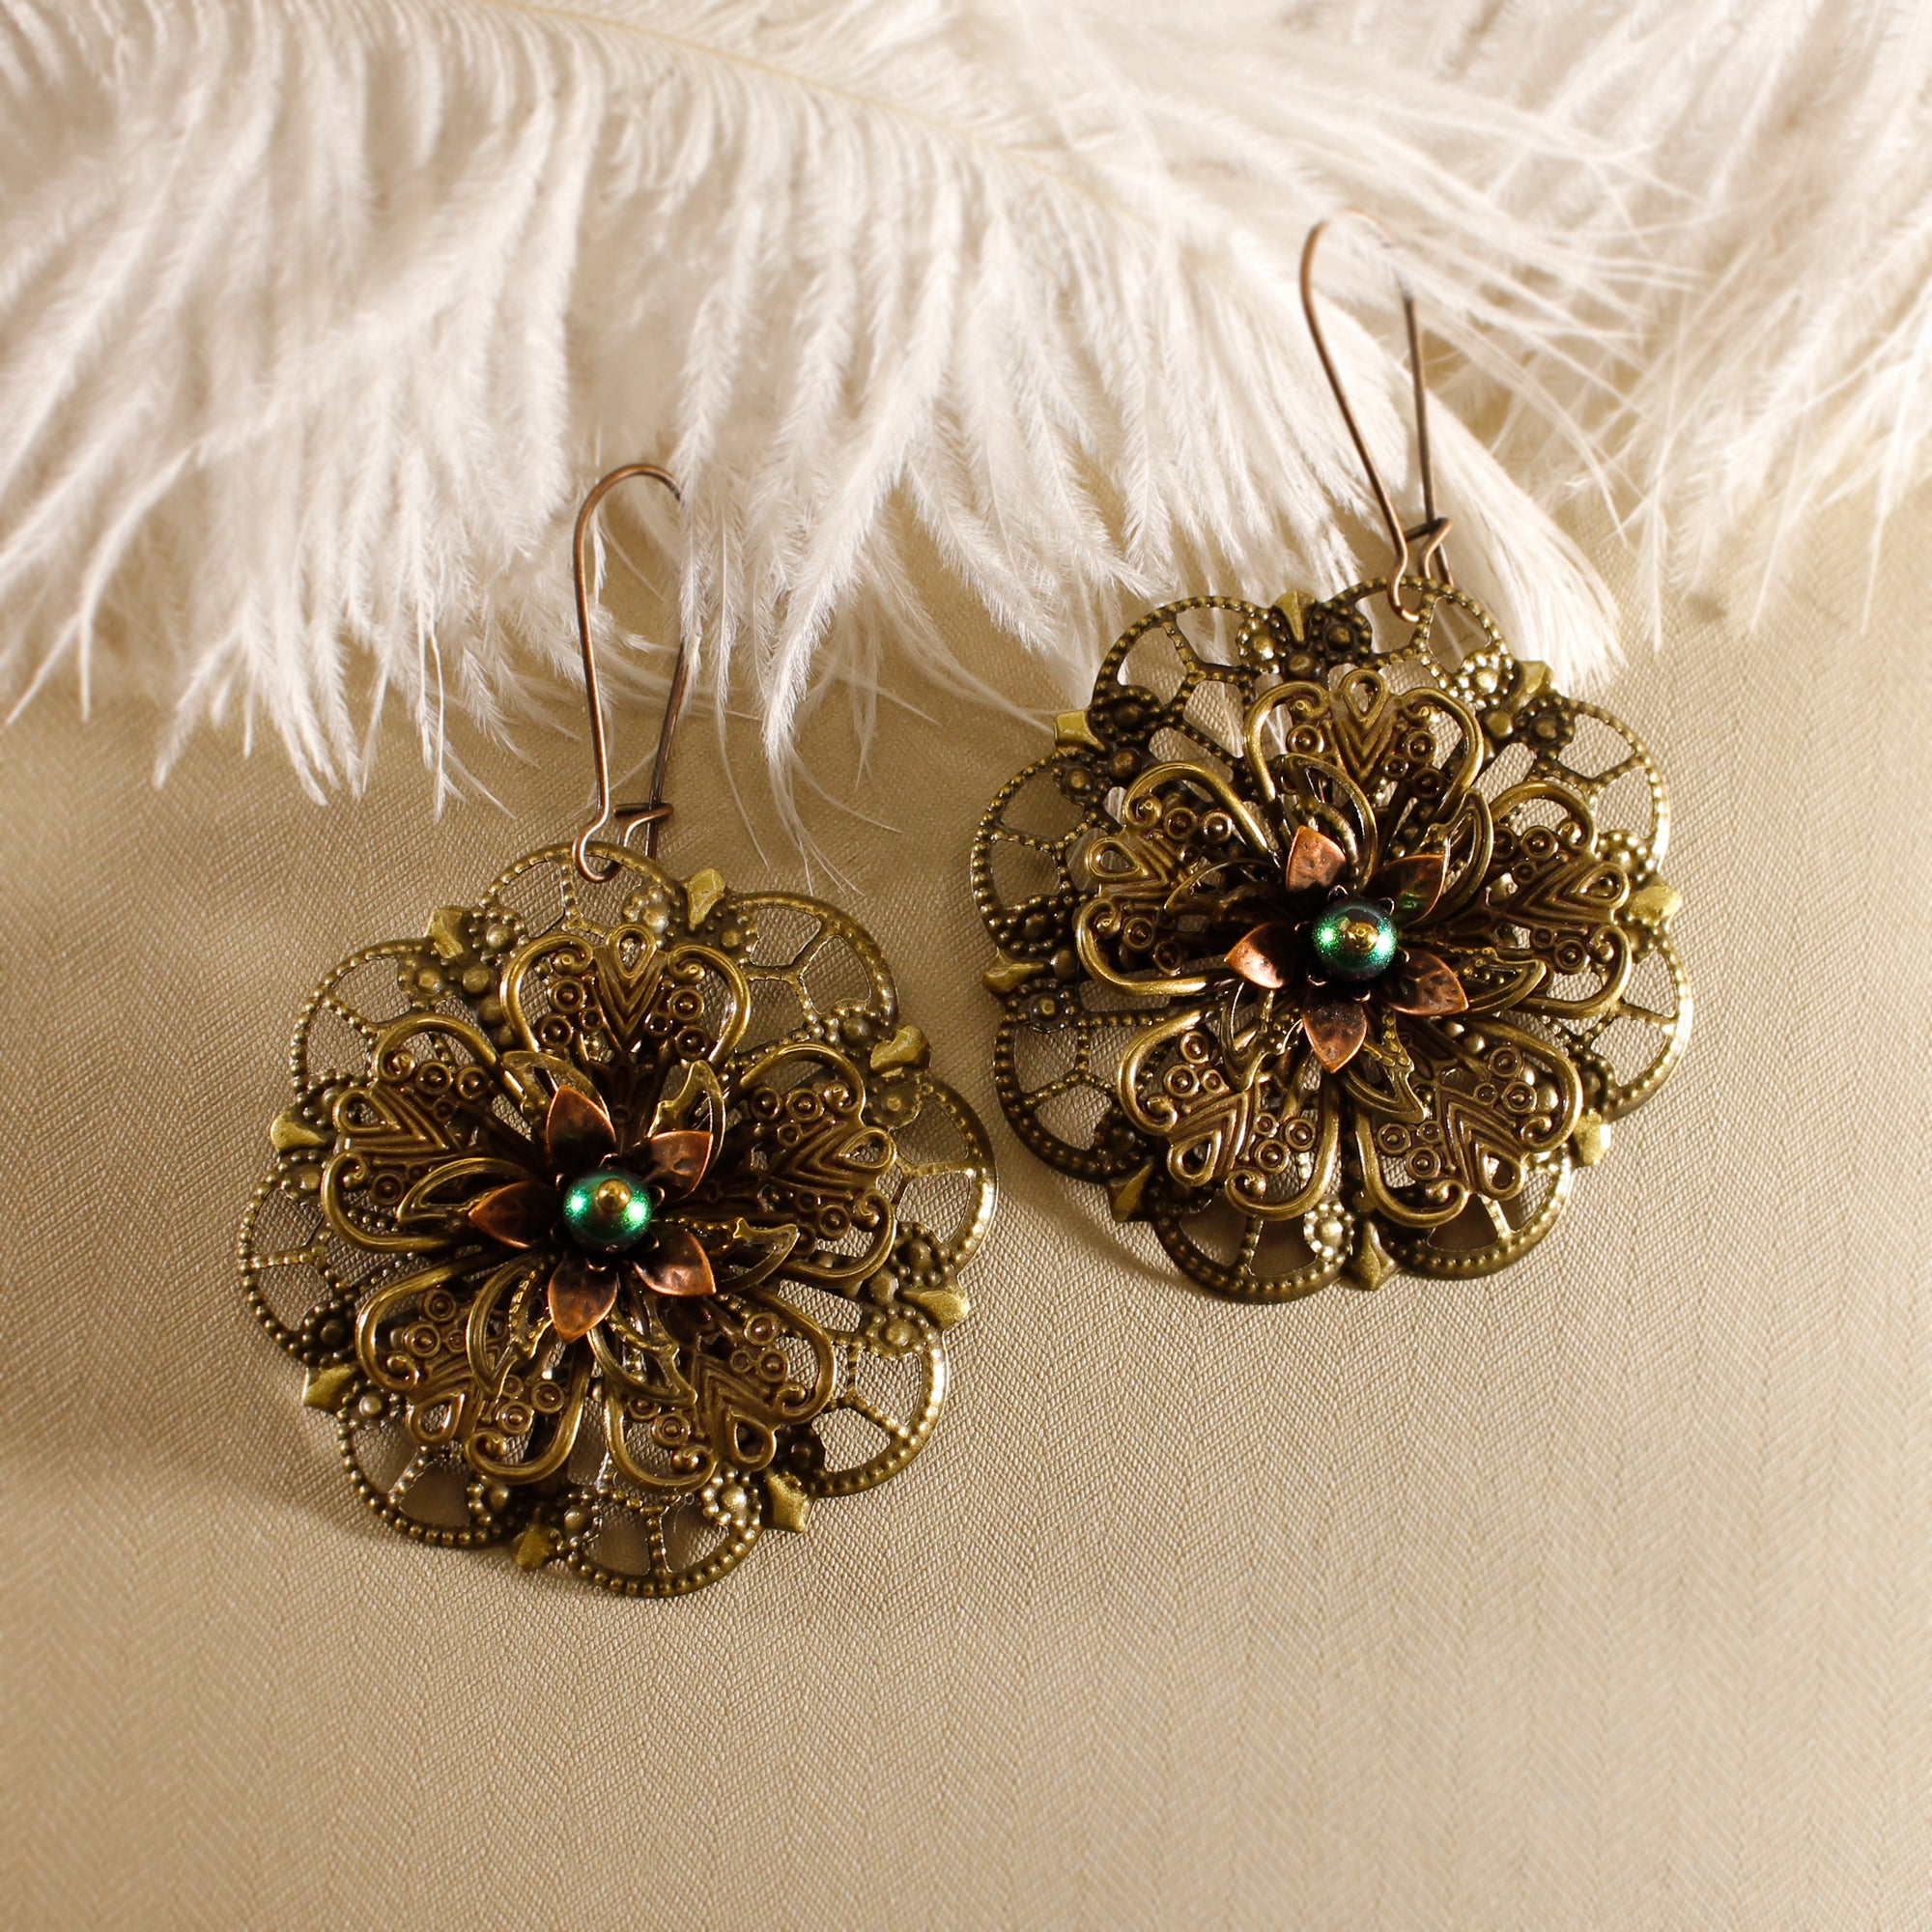 Vintage Style Earrings - Delicate Flowers